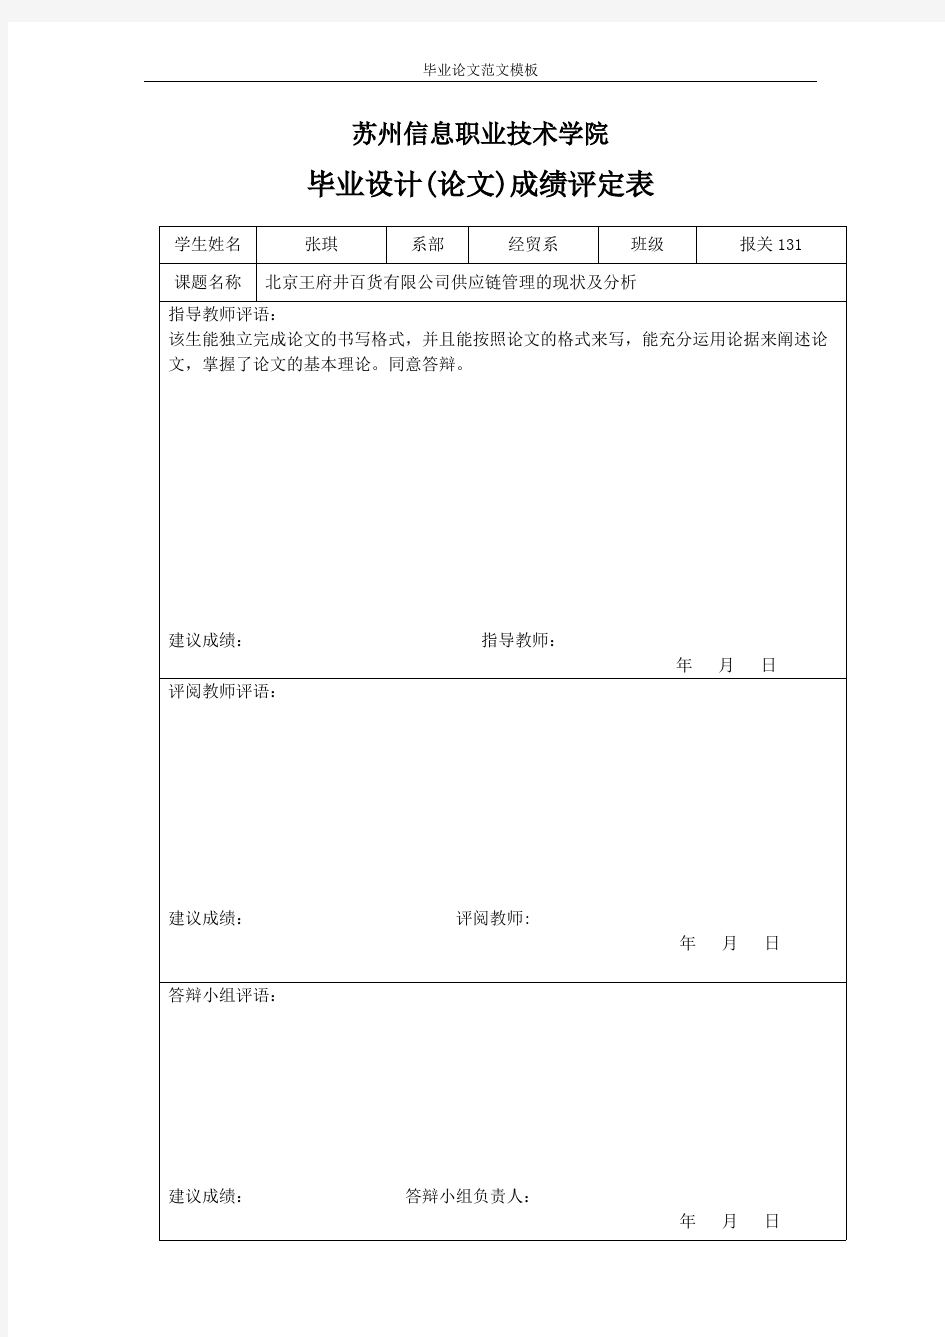 北京王府井百货有限公司供应链管理的现状及分析.pdf